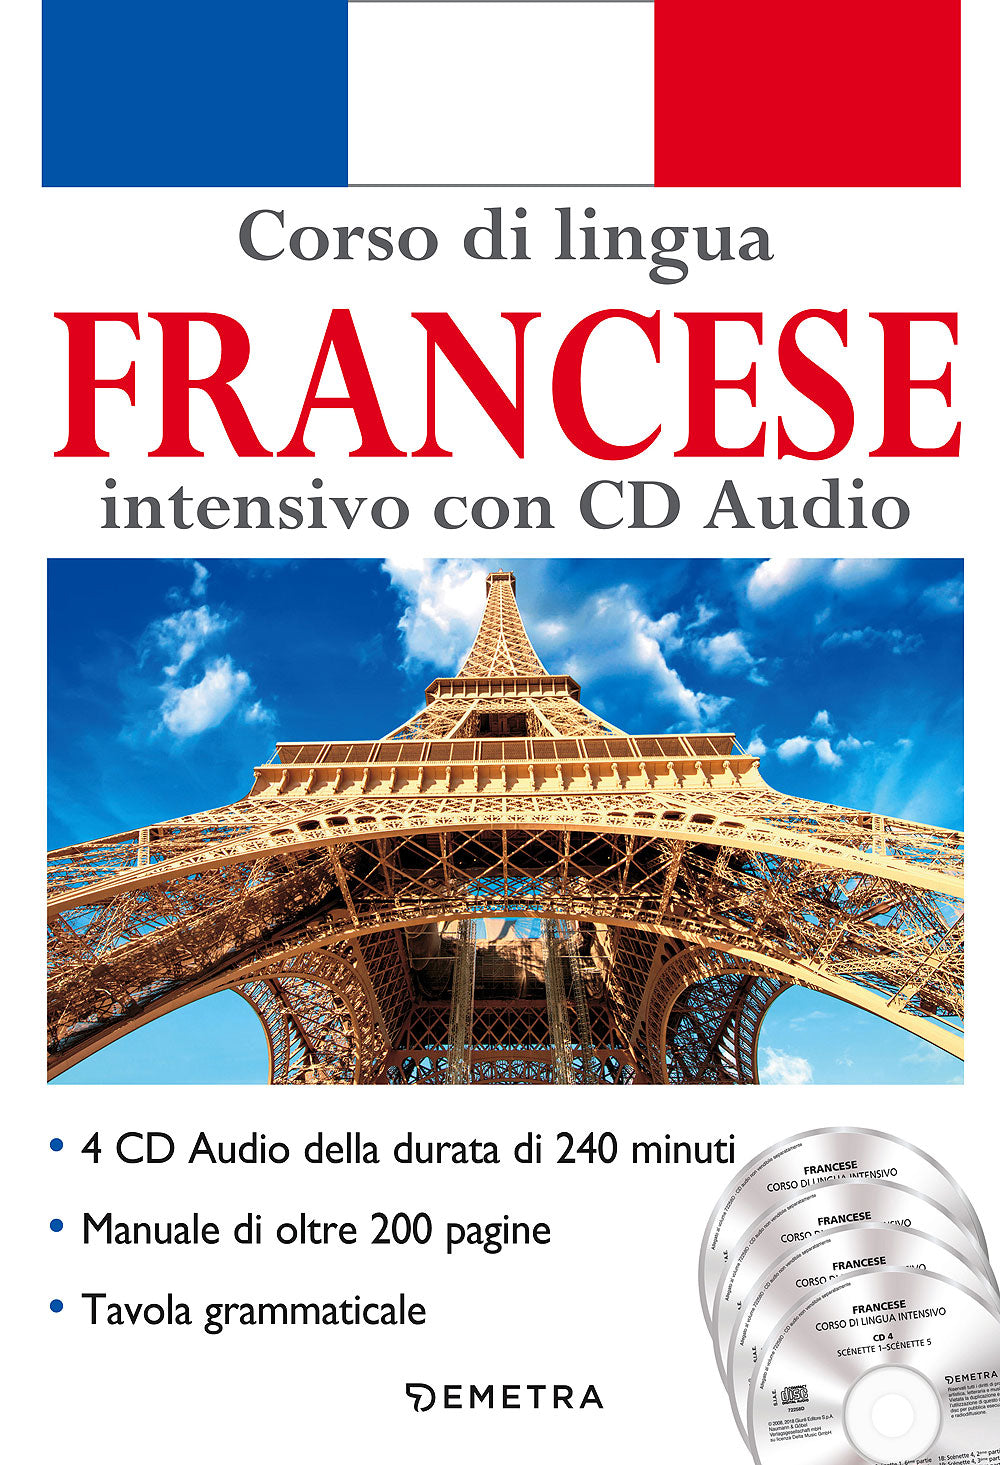 Corso di lingua Francese intensivo con CD Audio::4 CD della durata di 240 minuti - Manuale di oltre 200 pagine - Tavola grammaticale